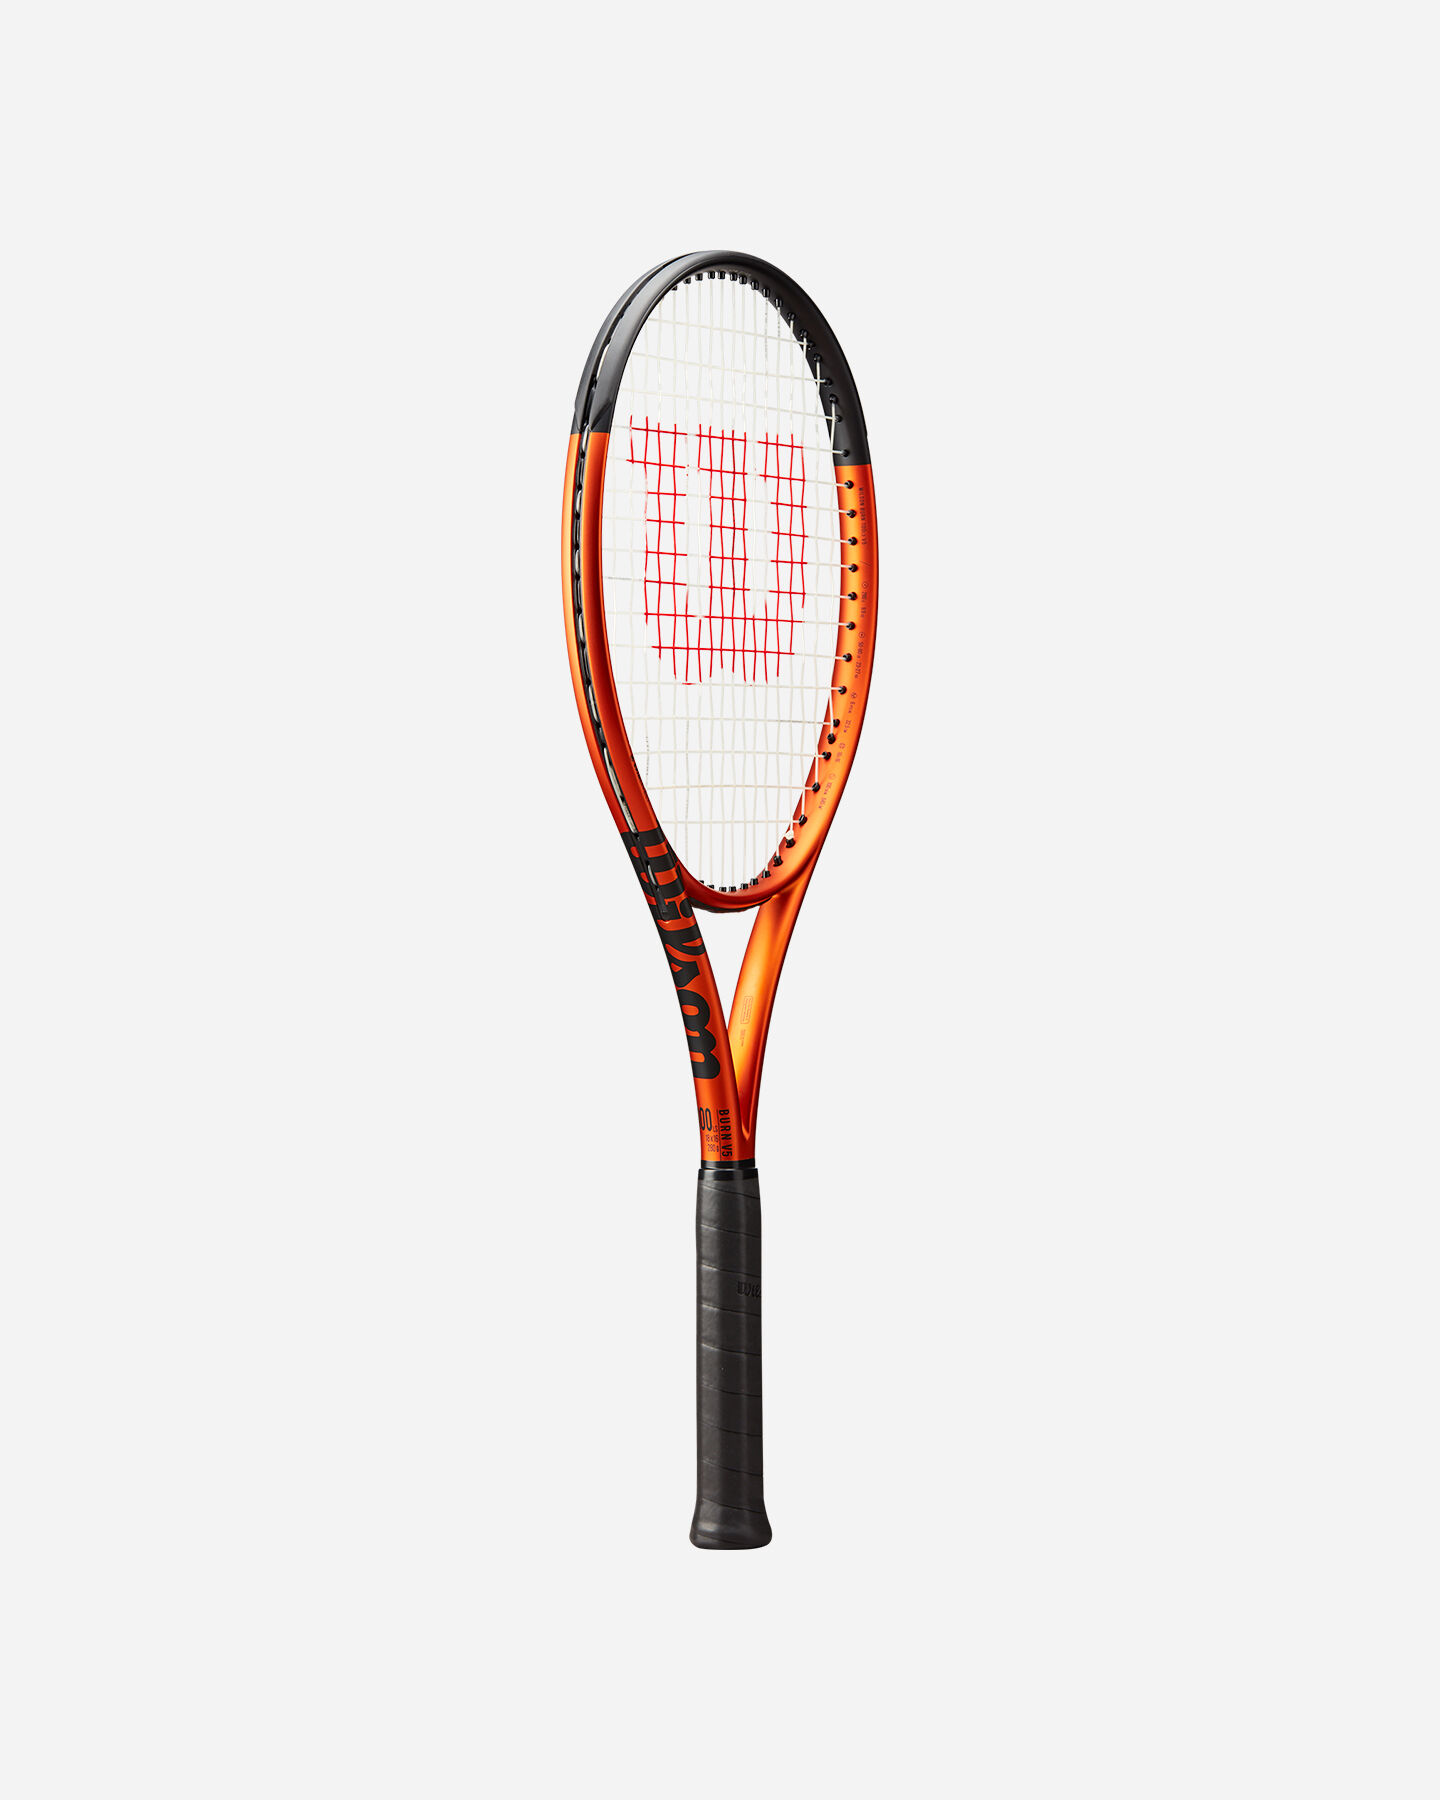  Racchetta tennis WILSON BURN 100LS V5.0 RKT  S5572696|UNI|0 scatto 1